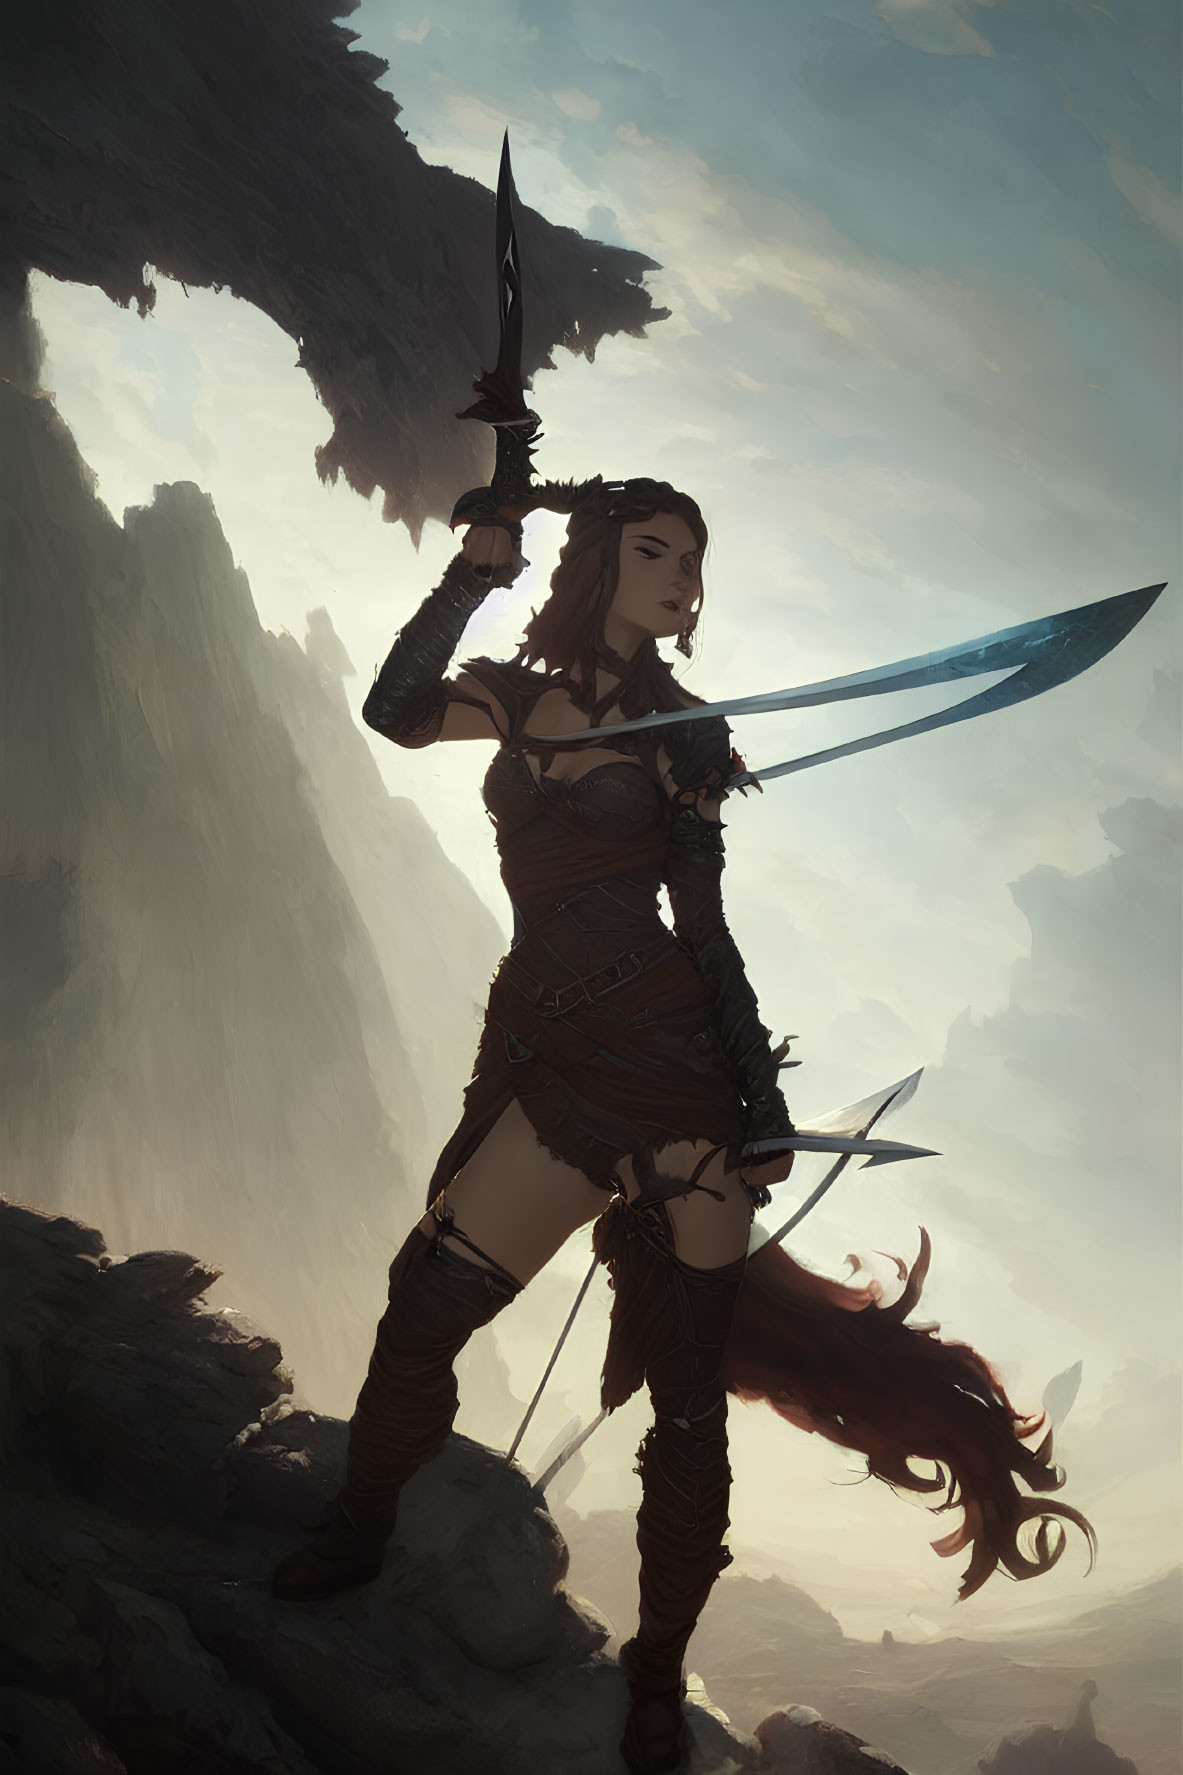 Warrior woman in leather armor wields sword on rocky terrain